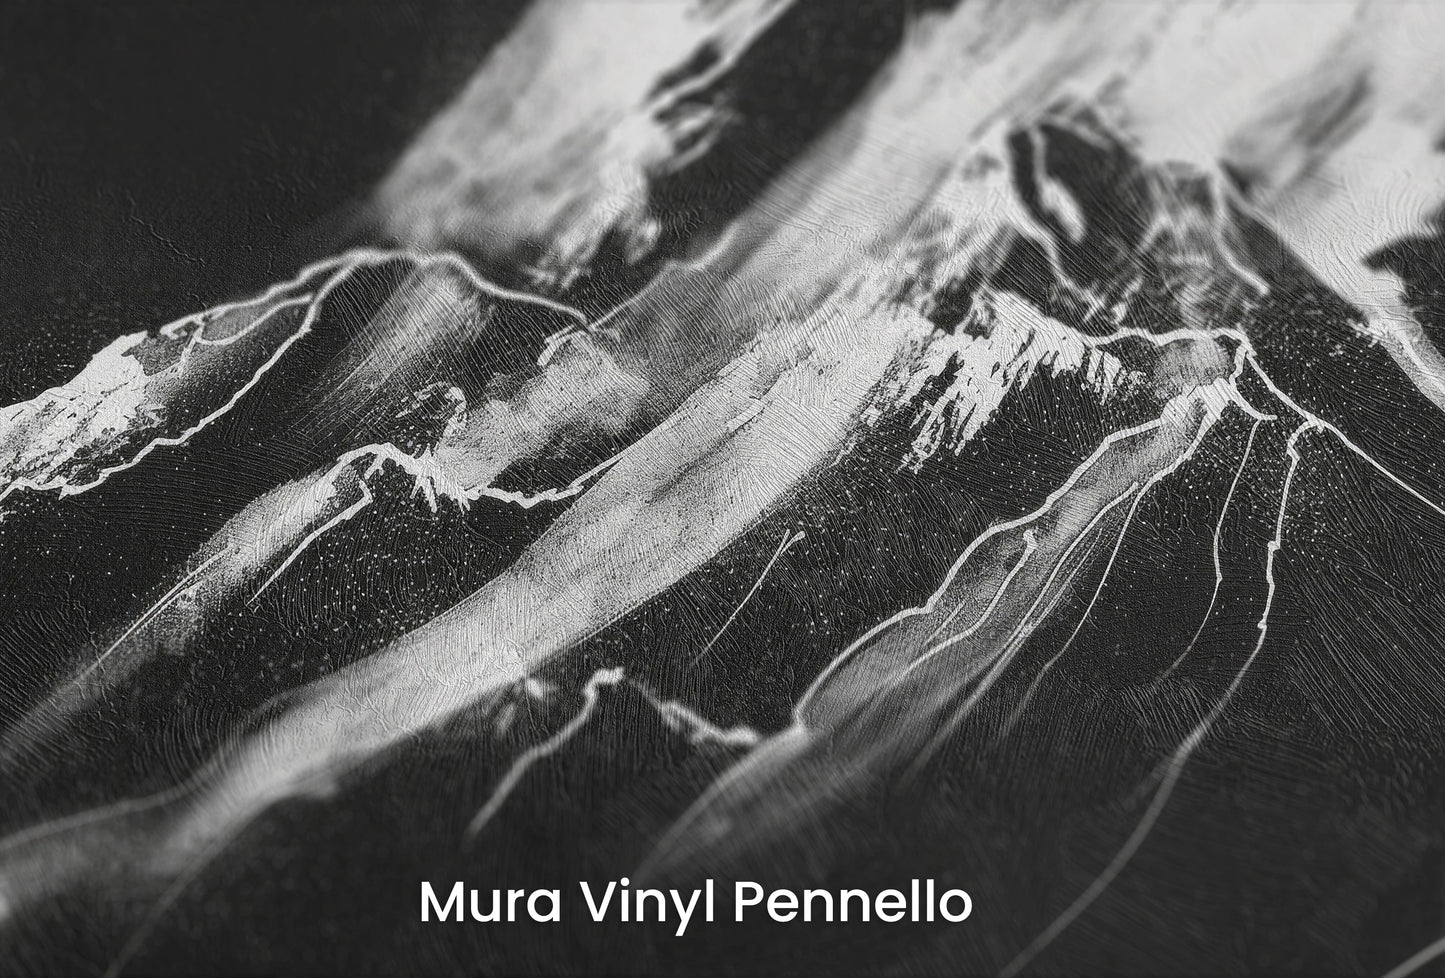 Zbliżenie na artystyczną fototapetę o nazwie Monochrome Majesty na podłożu Mura Vinyl Pennello - faktura pociągnięć pędzla malarskiego.